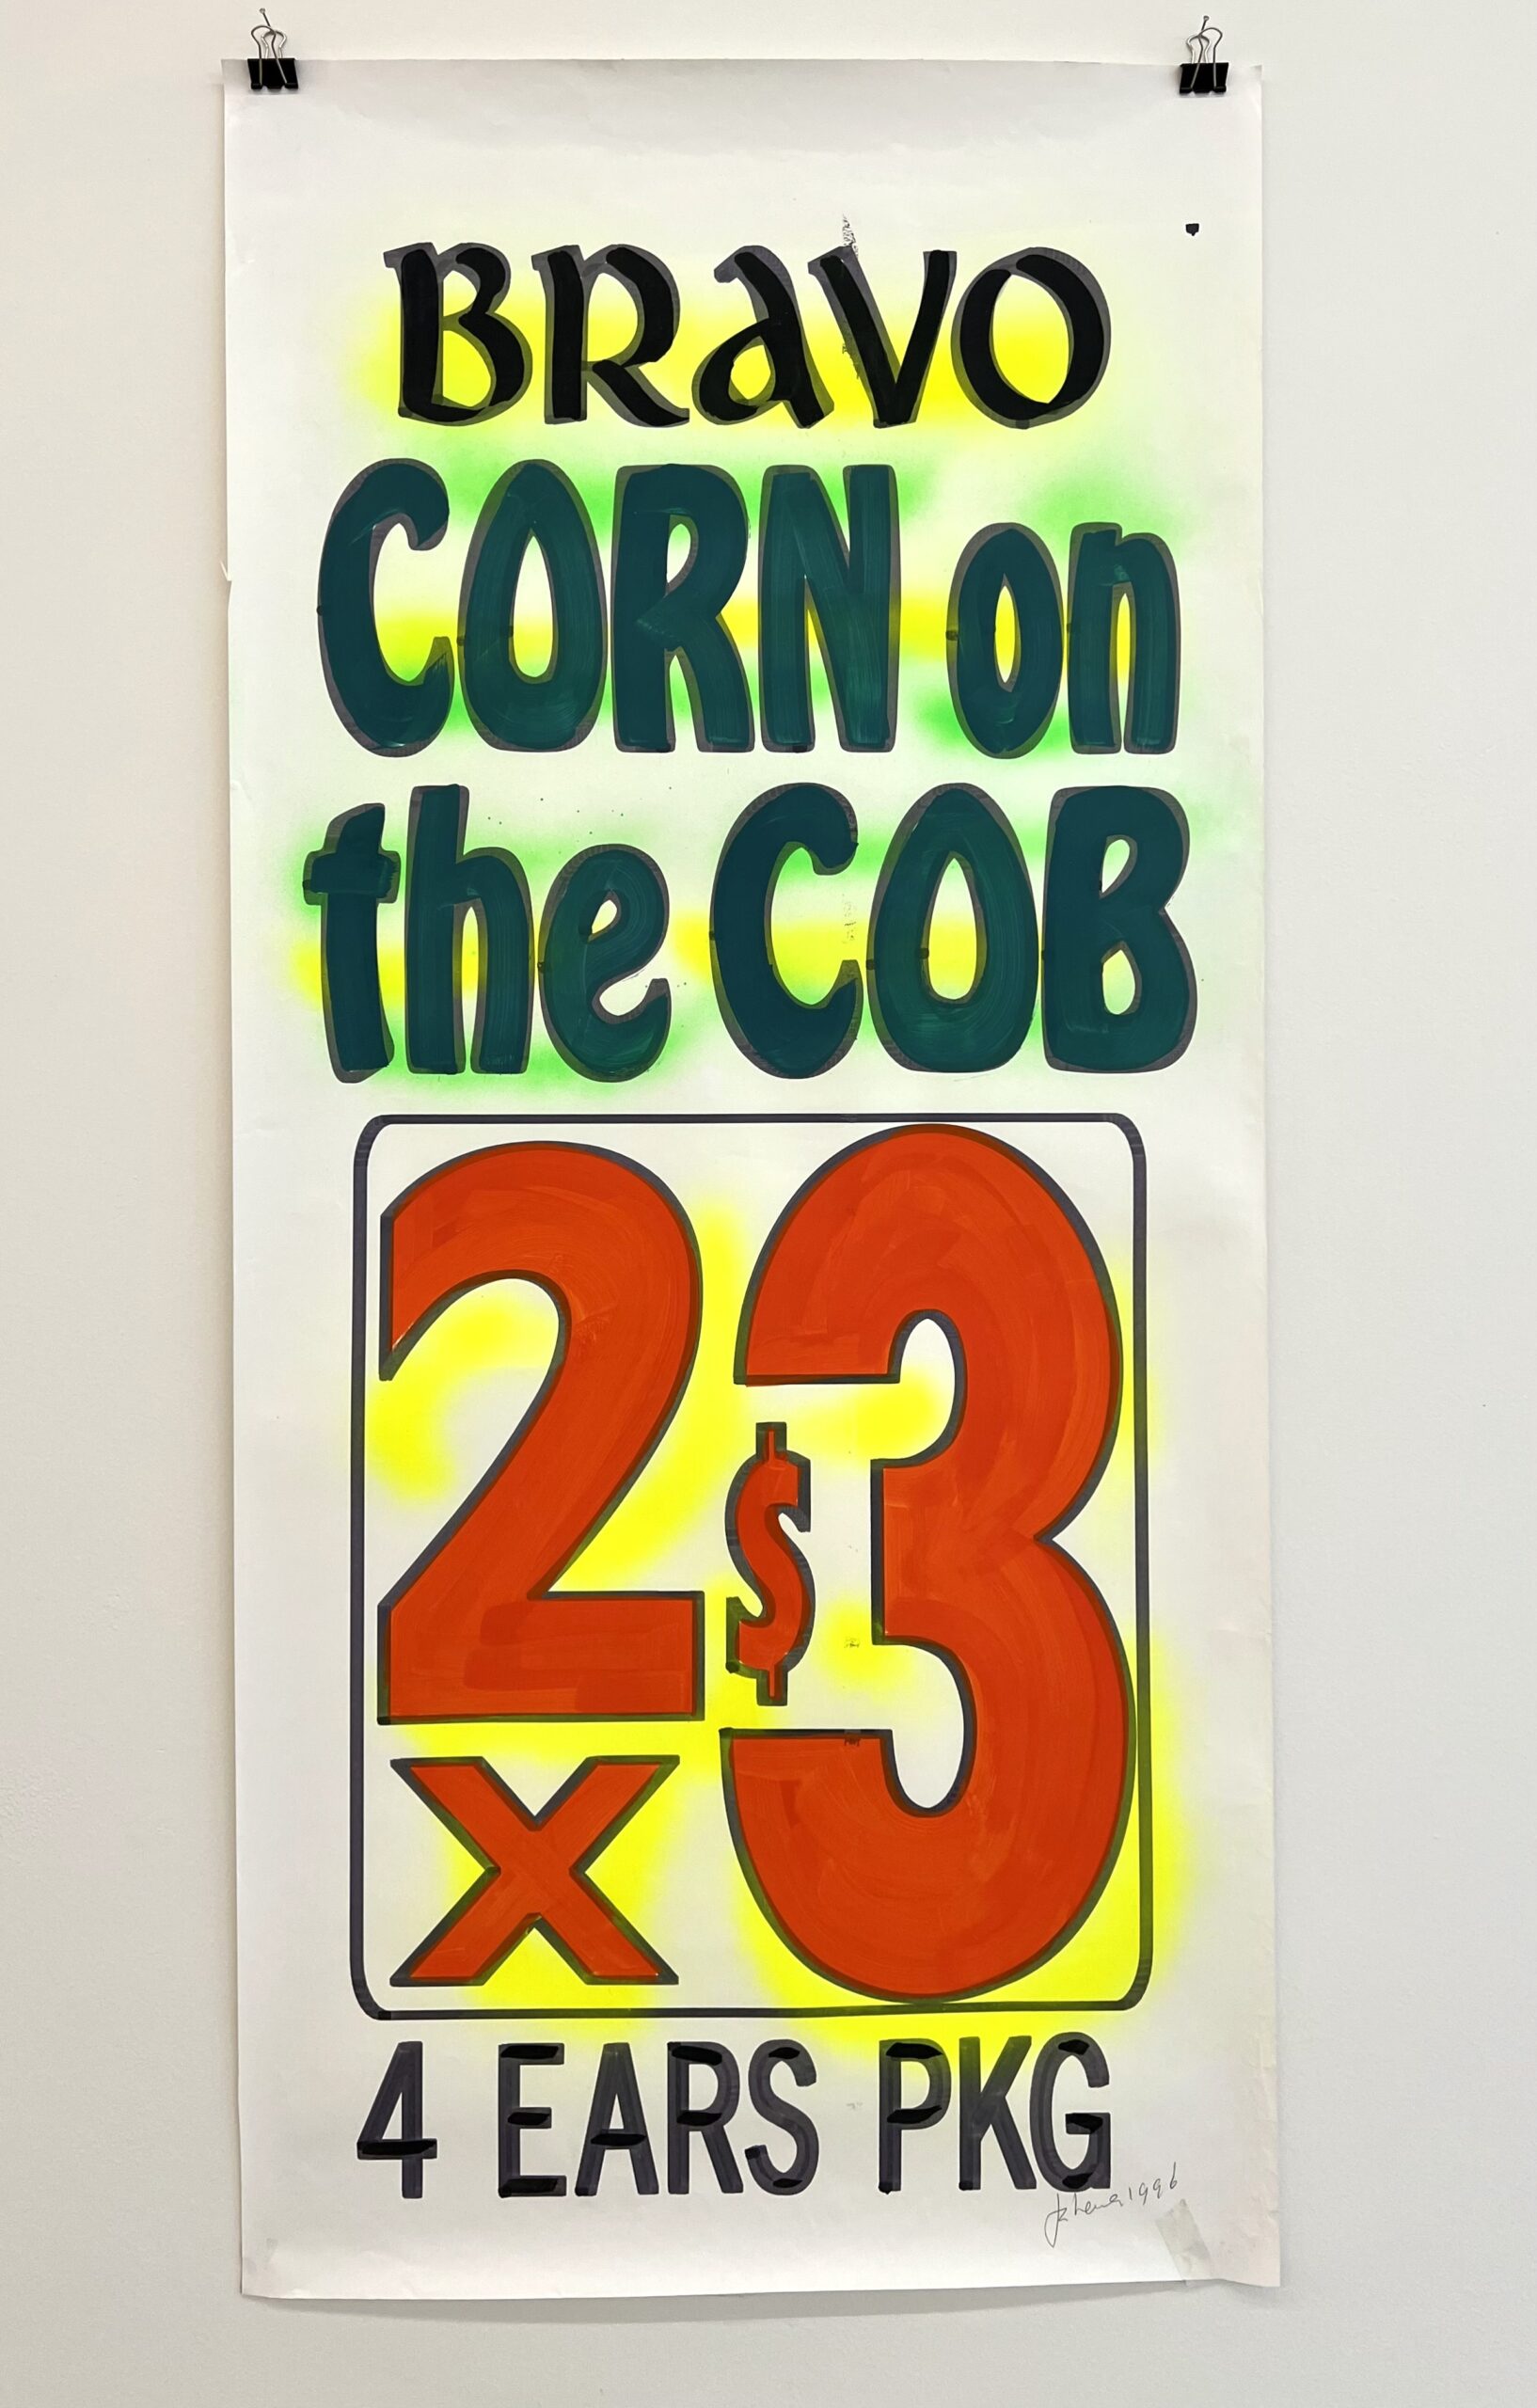 Bravo (Corn on the cob)